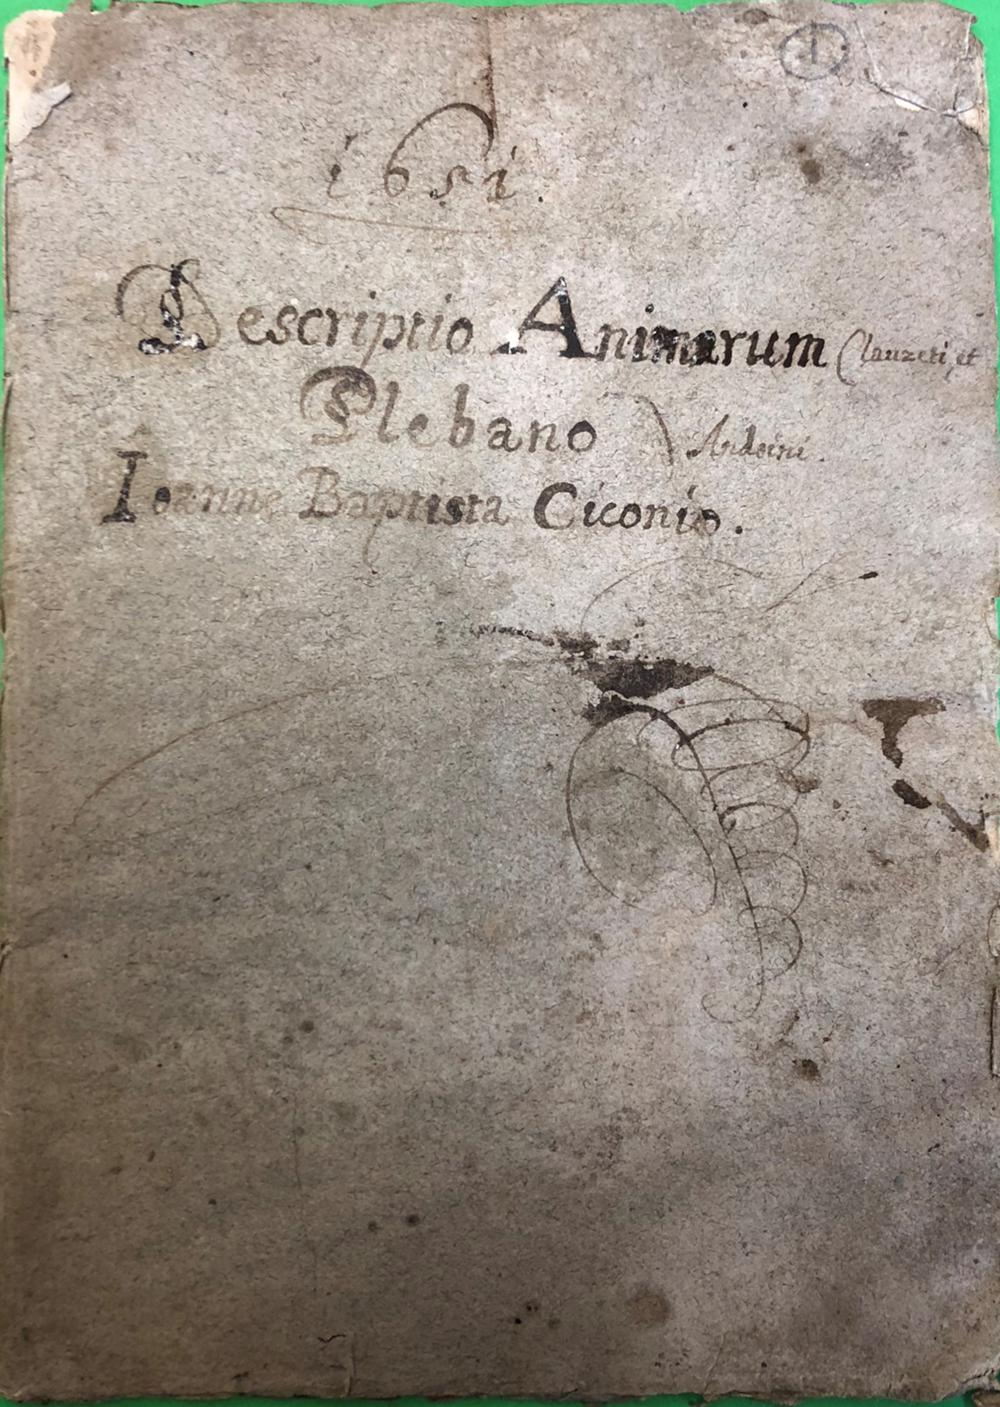 Descriptio animarum Clauzeti et Anduini plebano Ioanne Baptista Ciconio 1651